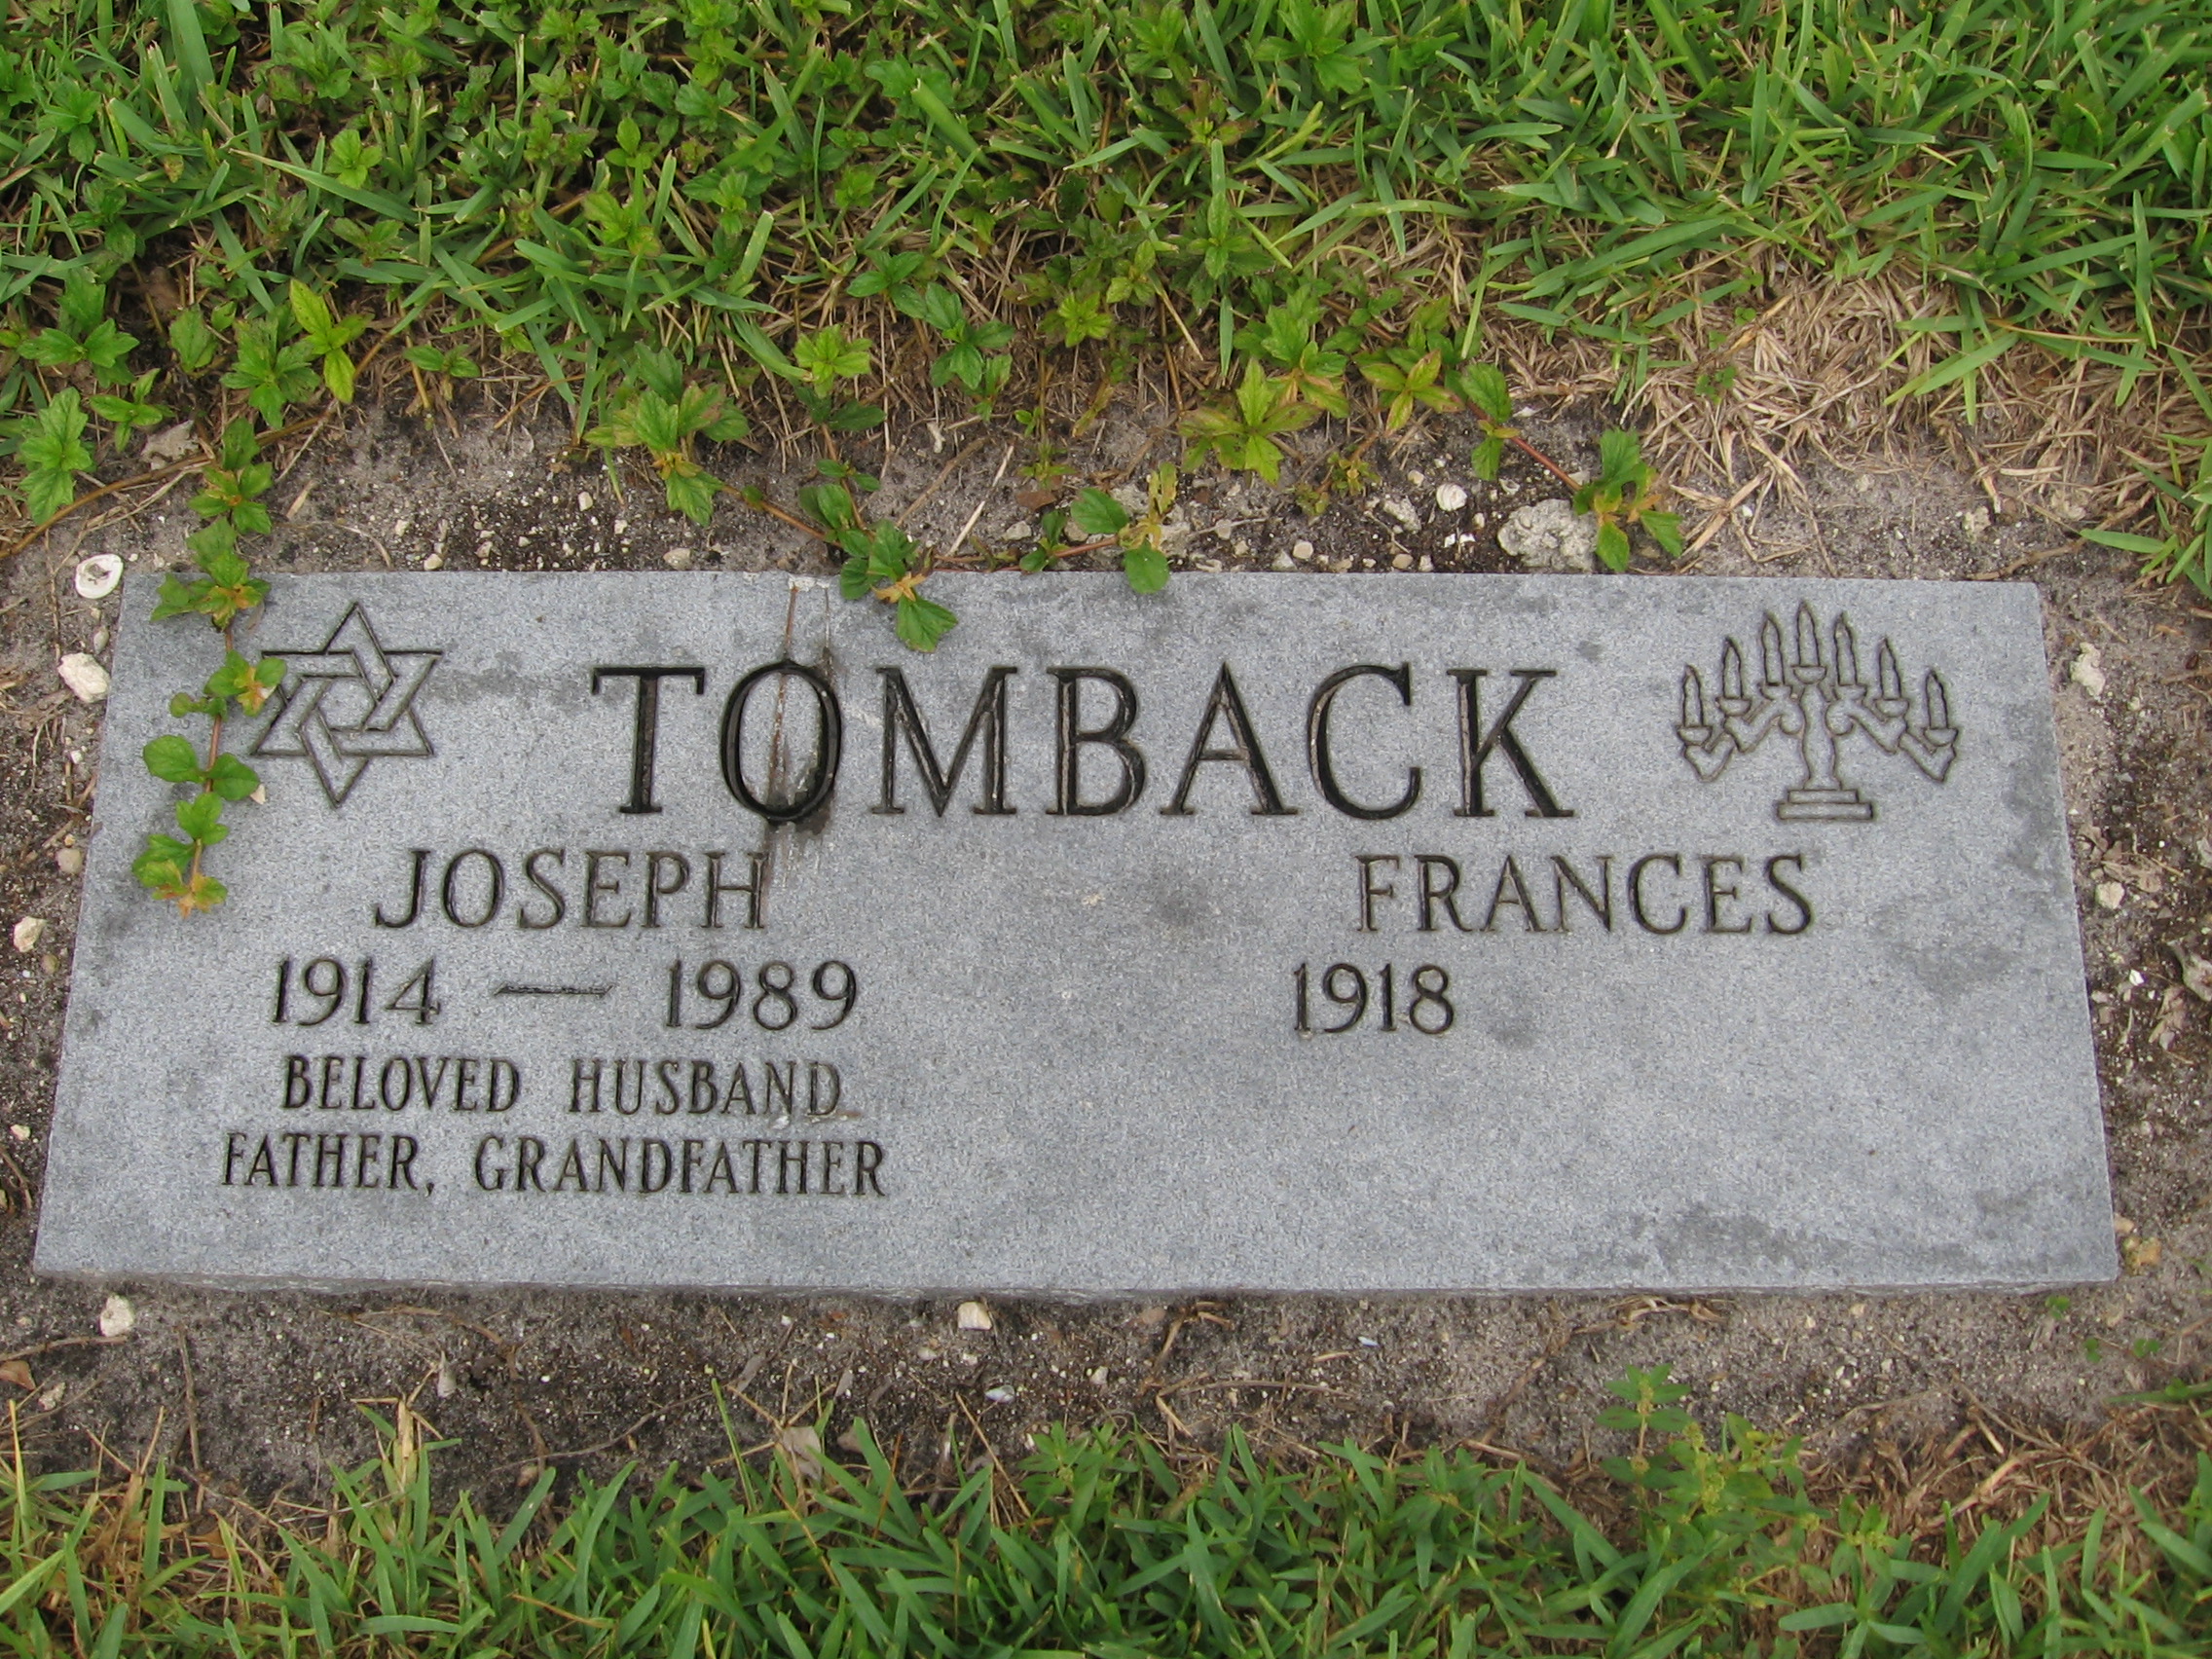 Joseph Tomback